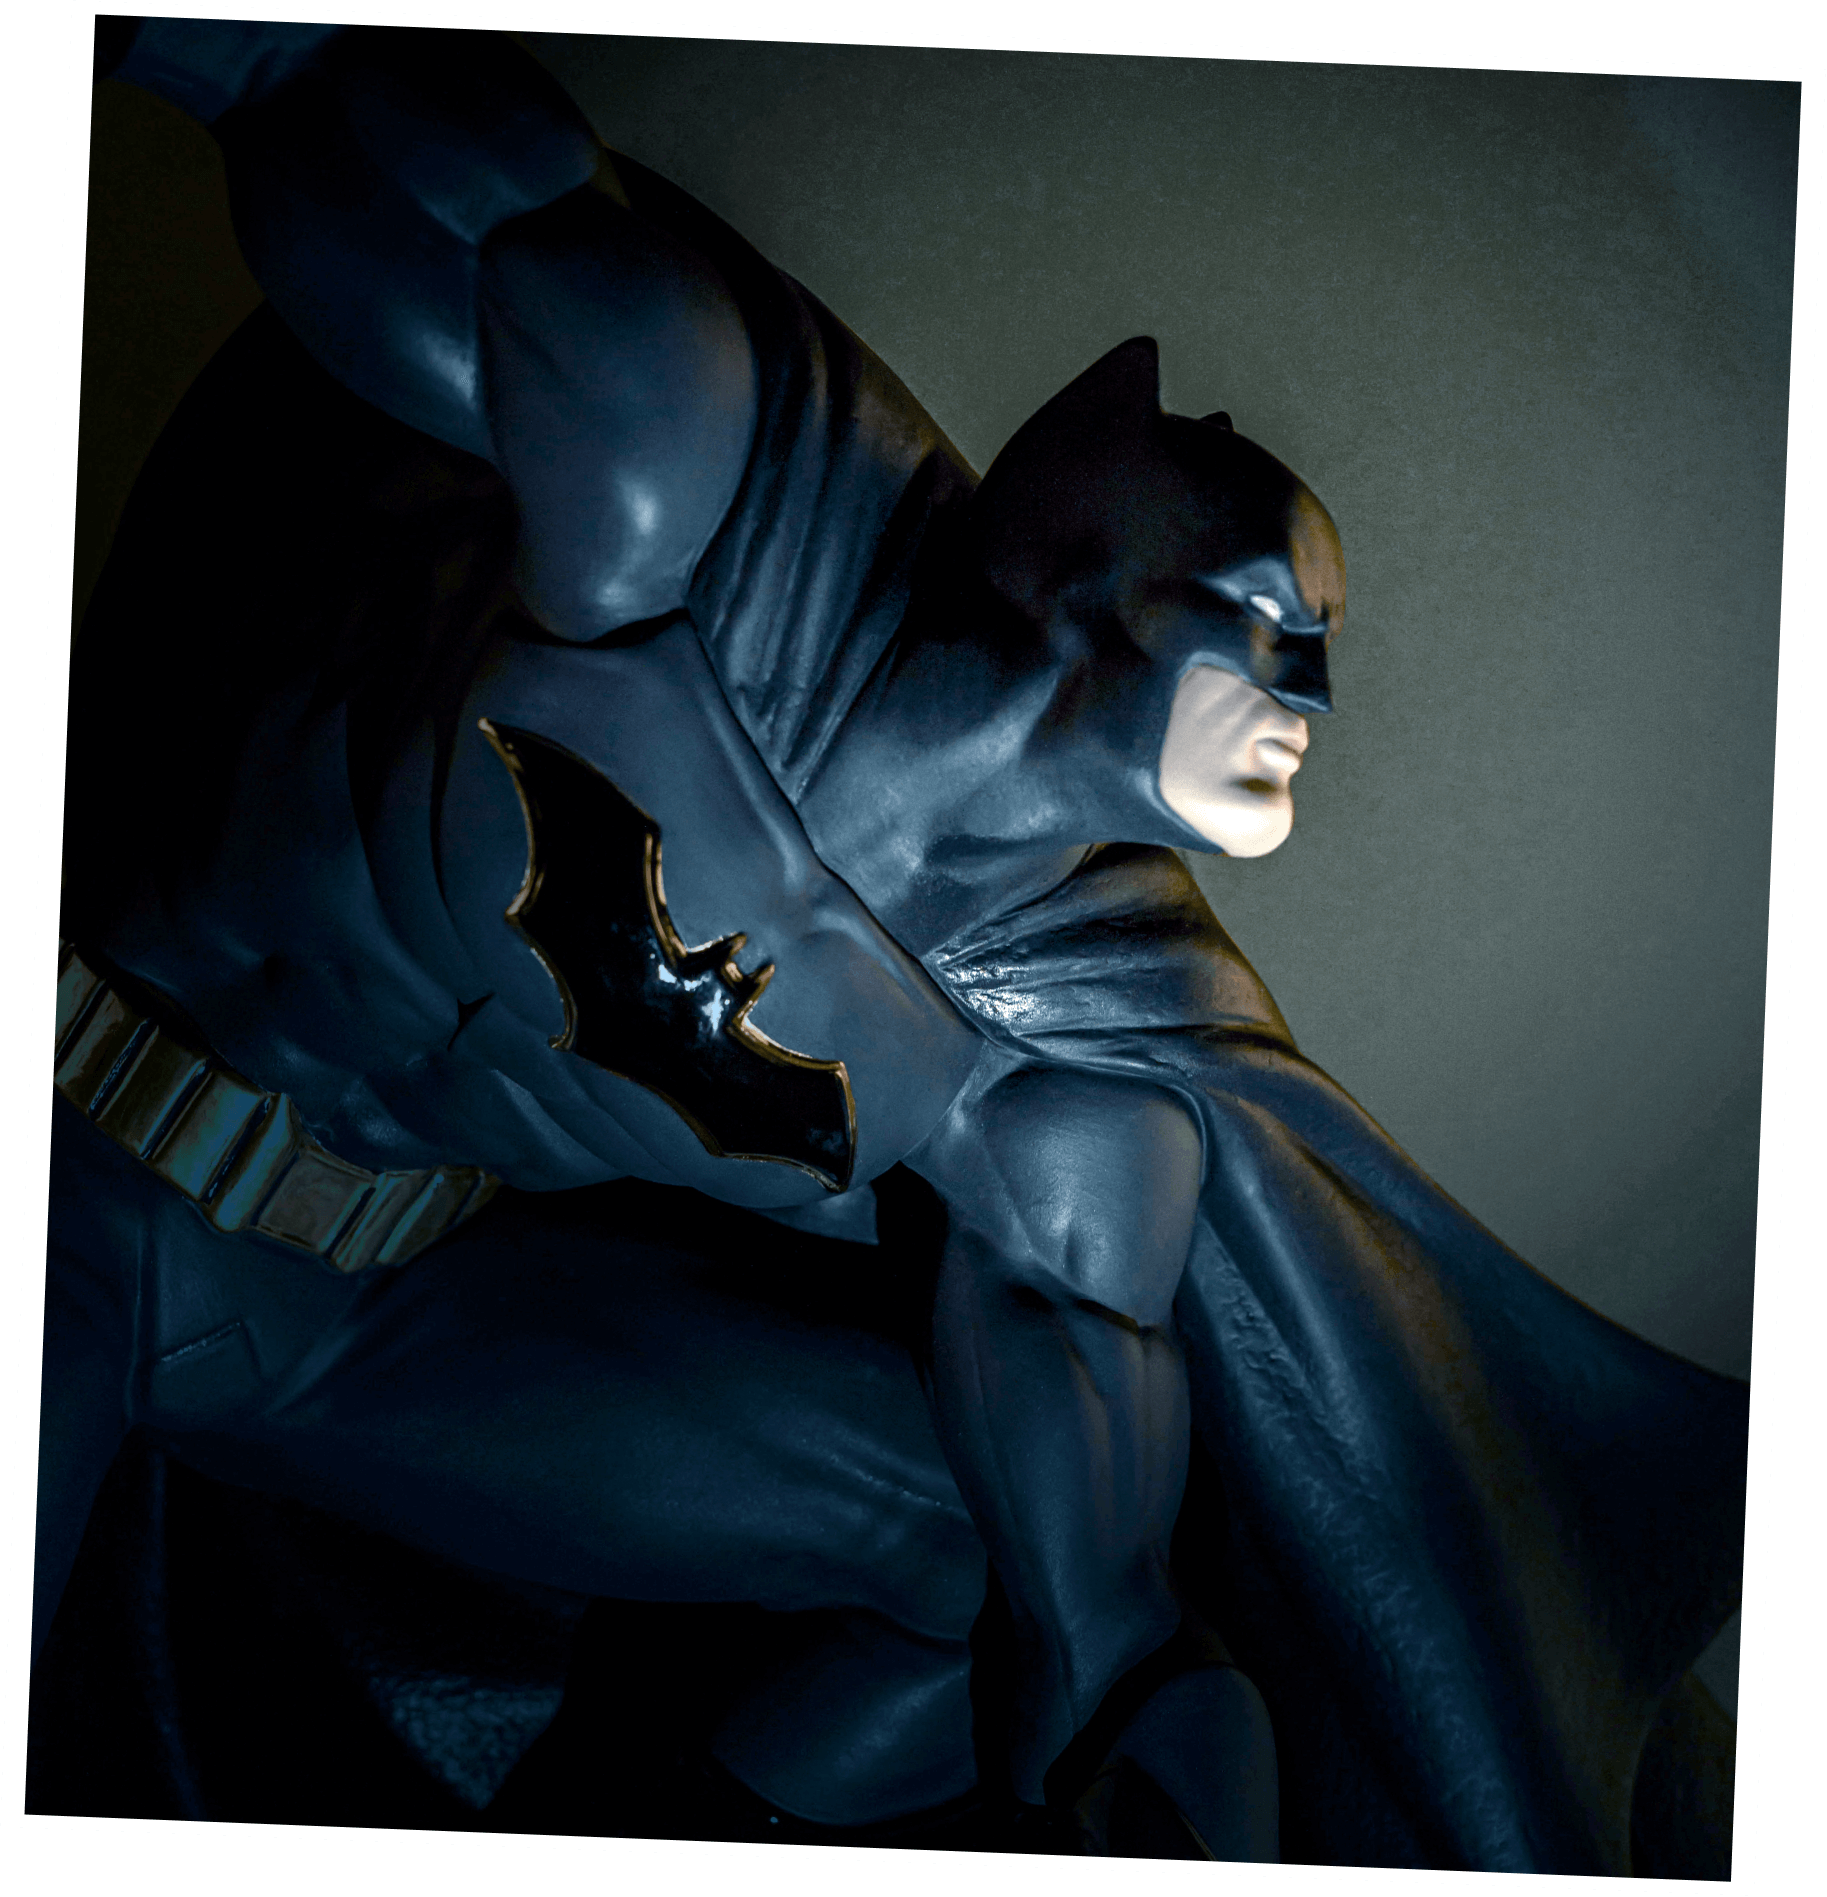 Scultura di Batman in una stanza buia